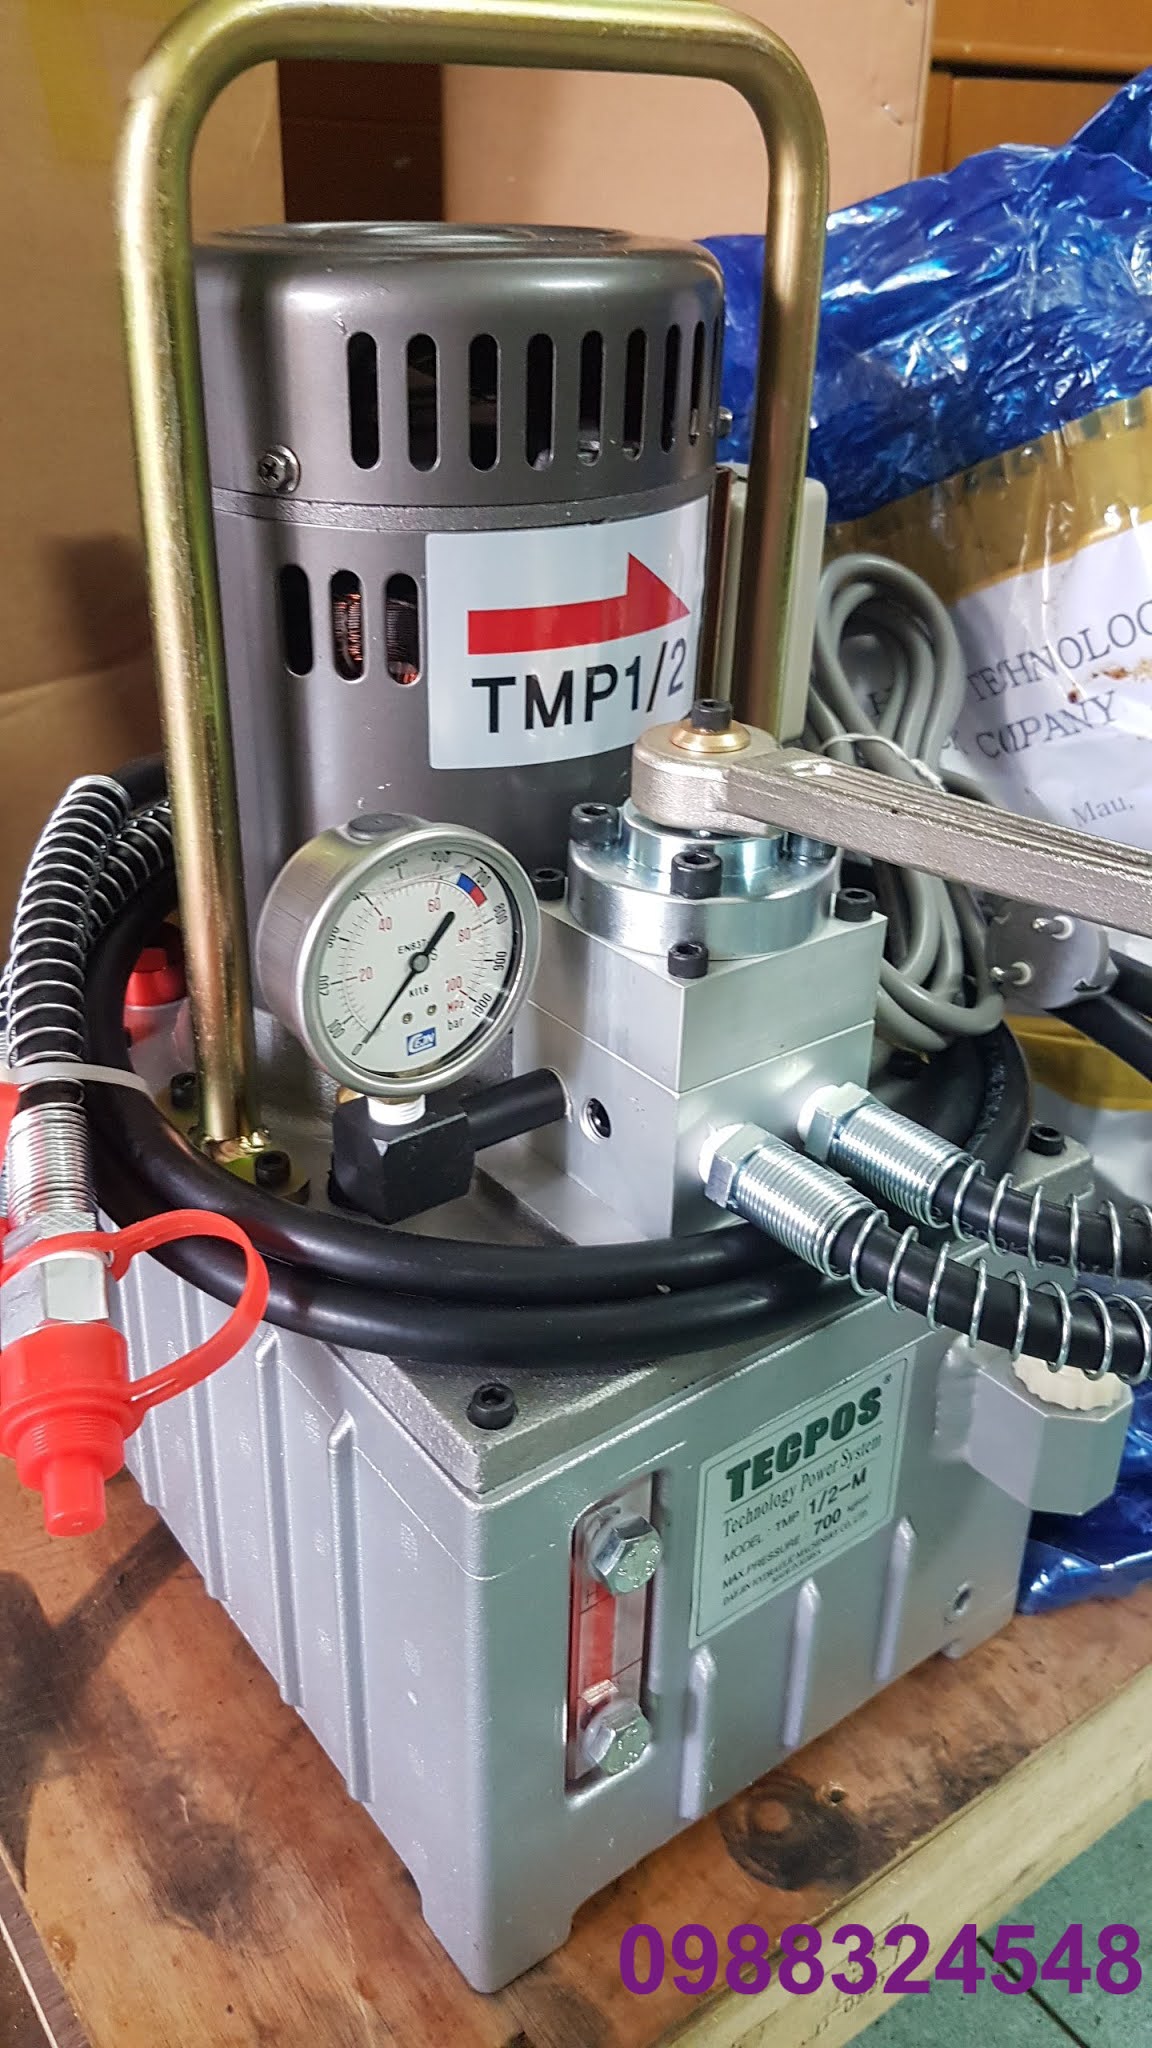 Bơm điện thủy lực Tecpos TMP 1/2-M